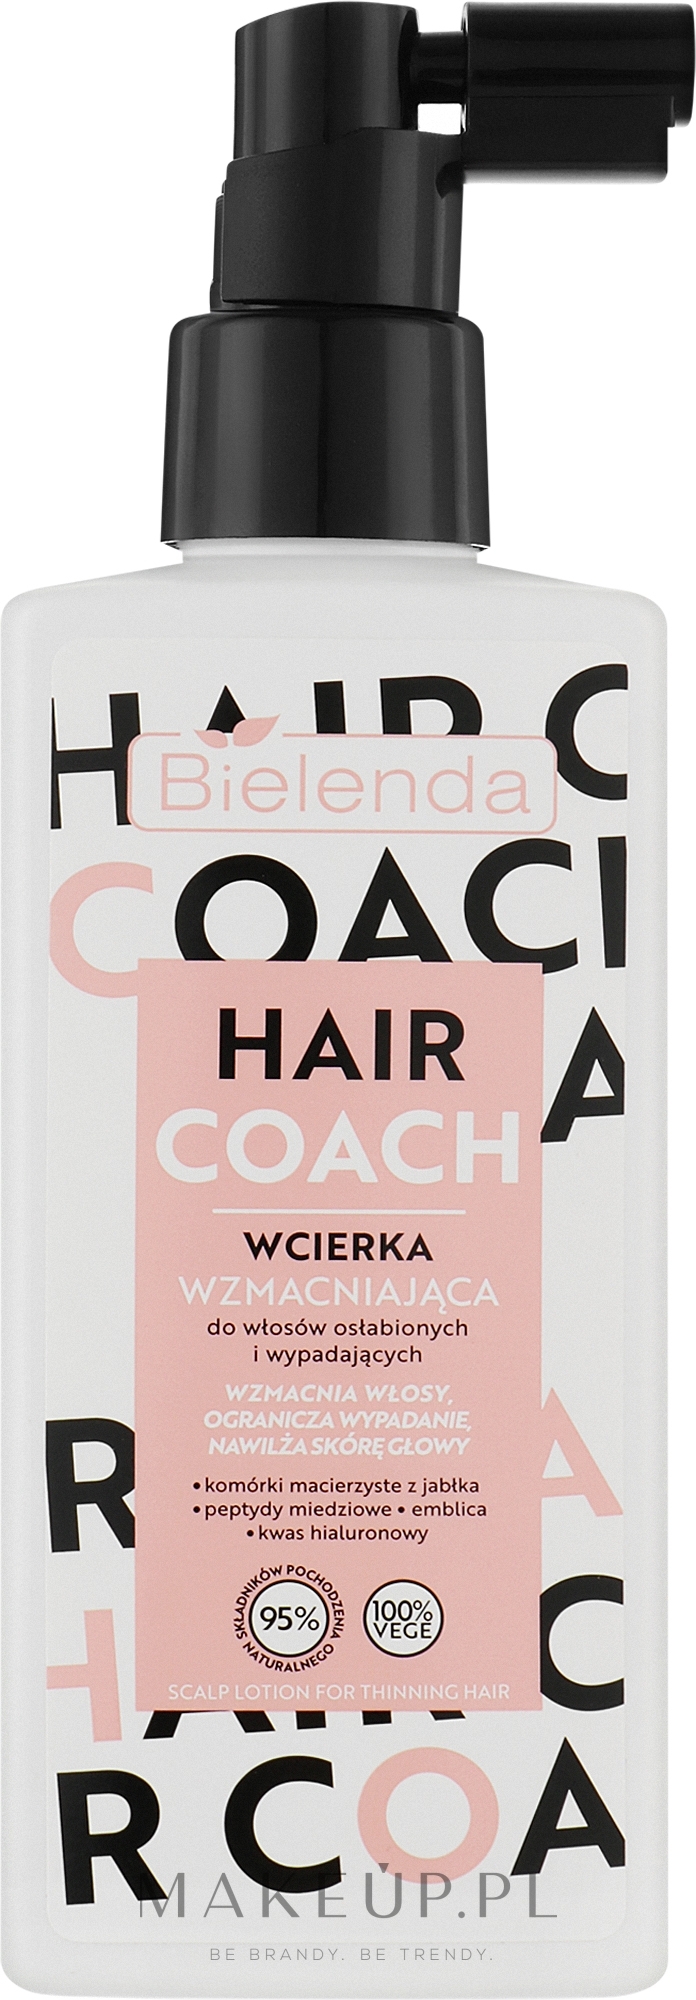 Wcierka wzmacniająca do włosów osłabionych i wypadających - Bielenda Hair Coach — Zdjęcie 150 ml